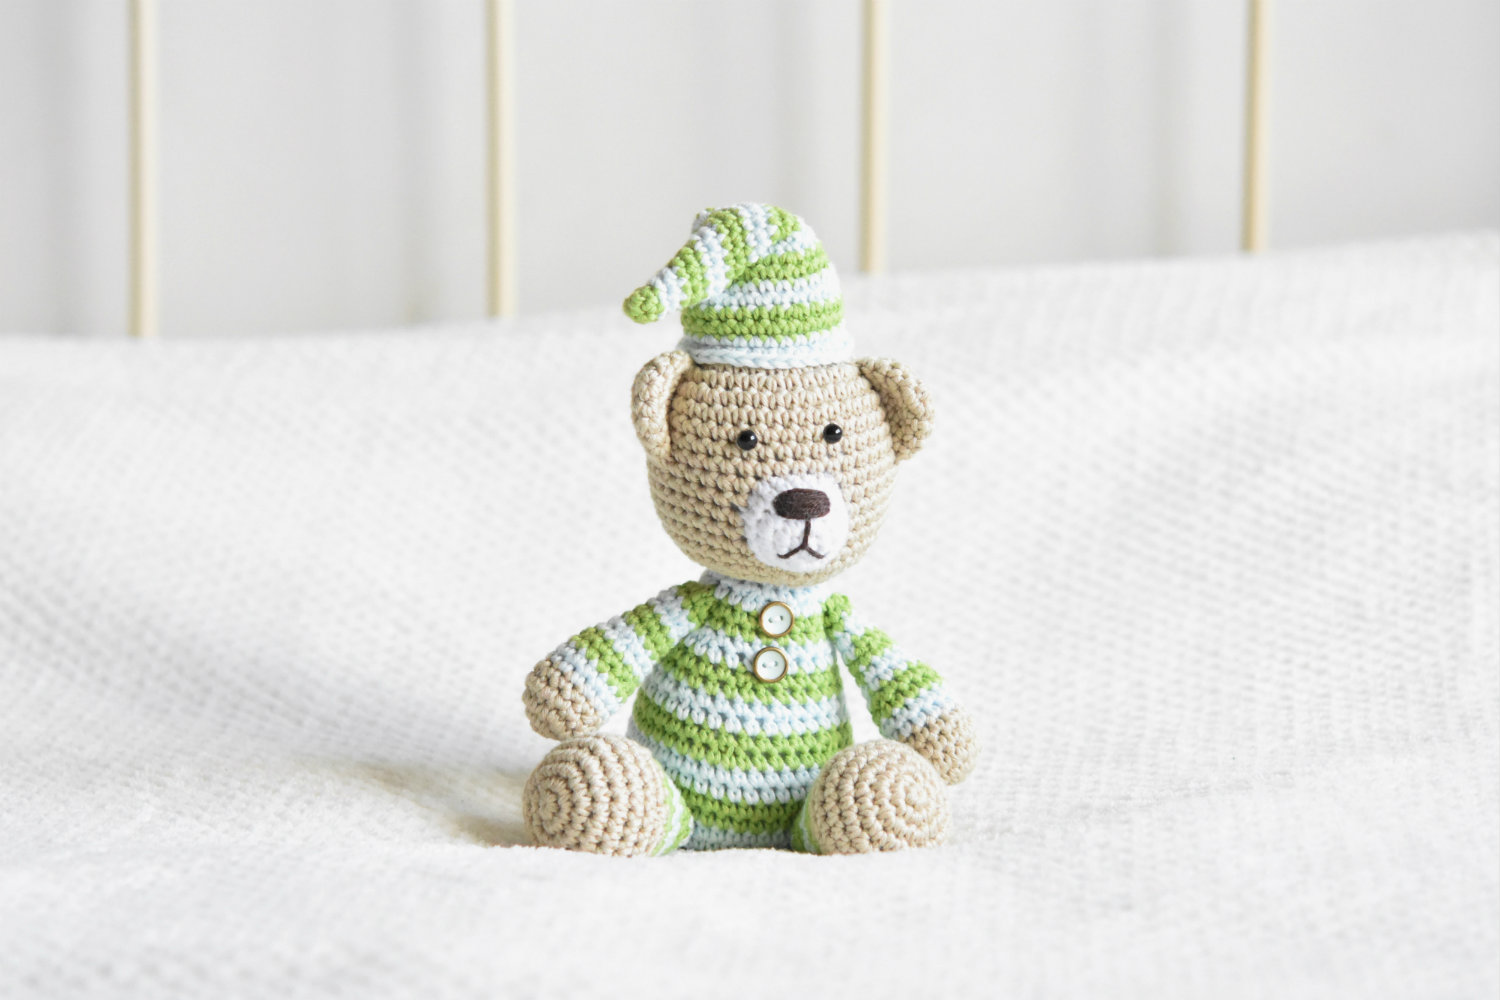 pajamas teddy amigurumi pattern